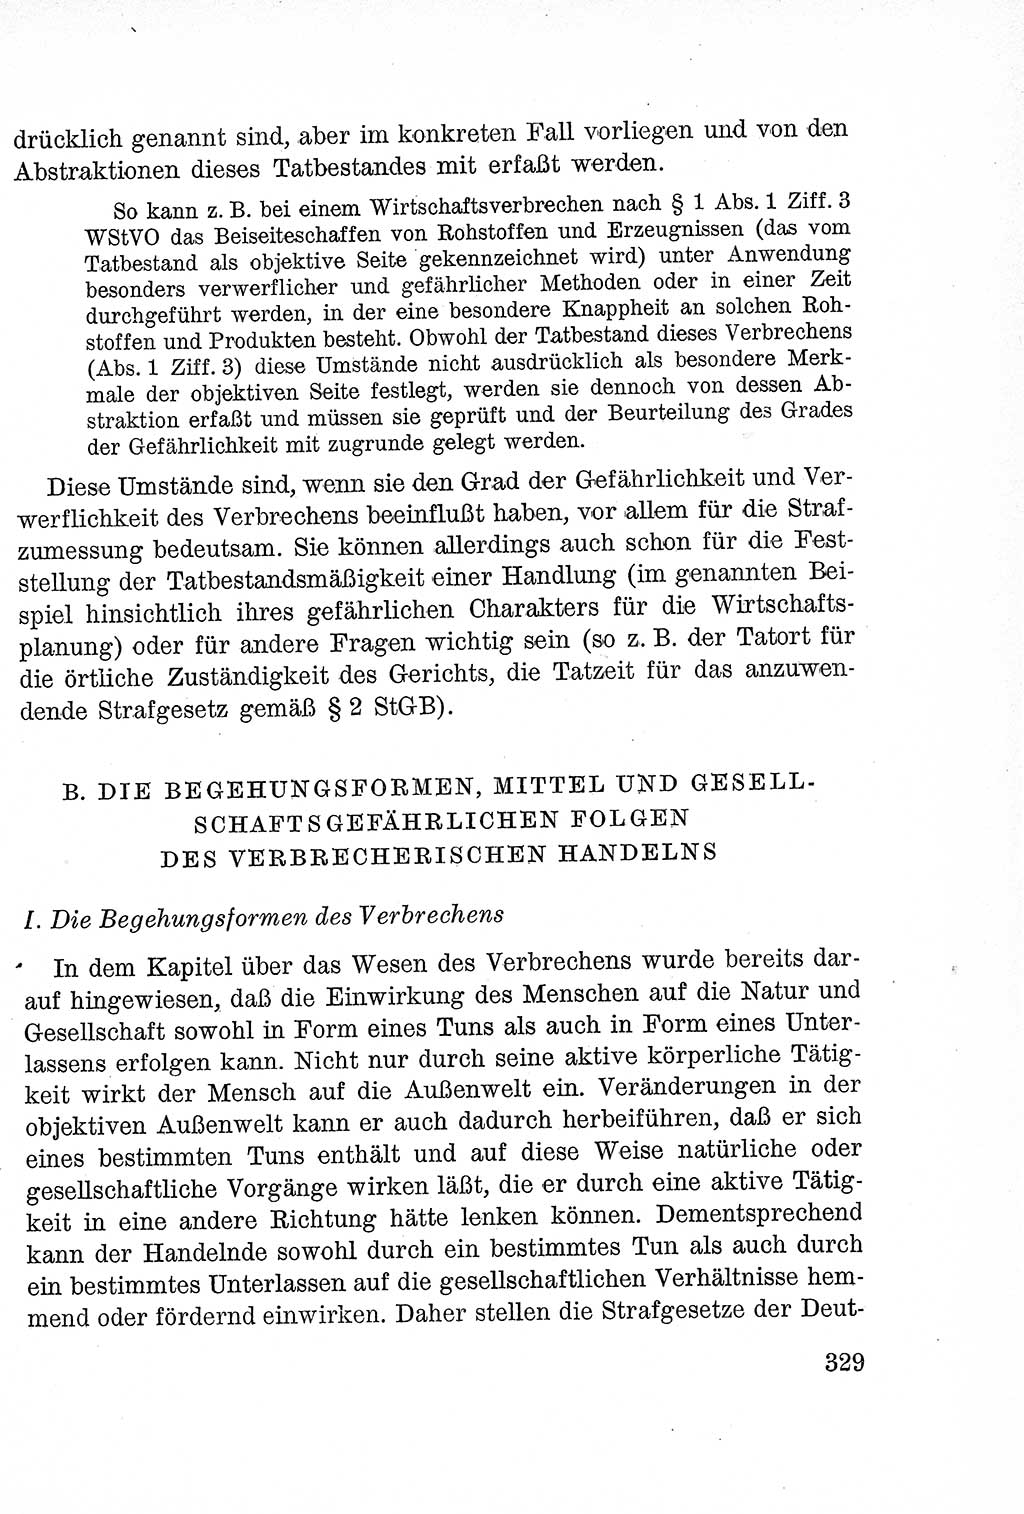 Lehrbuch des Strafrechts der Deutschen Demokratischen Republik (DDR), Allgemeiner Teil 1957, Seite 329 (Lb. Strafr. DDR AT 1957, S. 329)